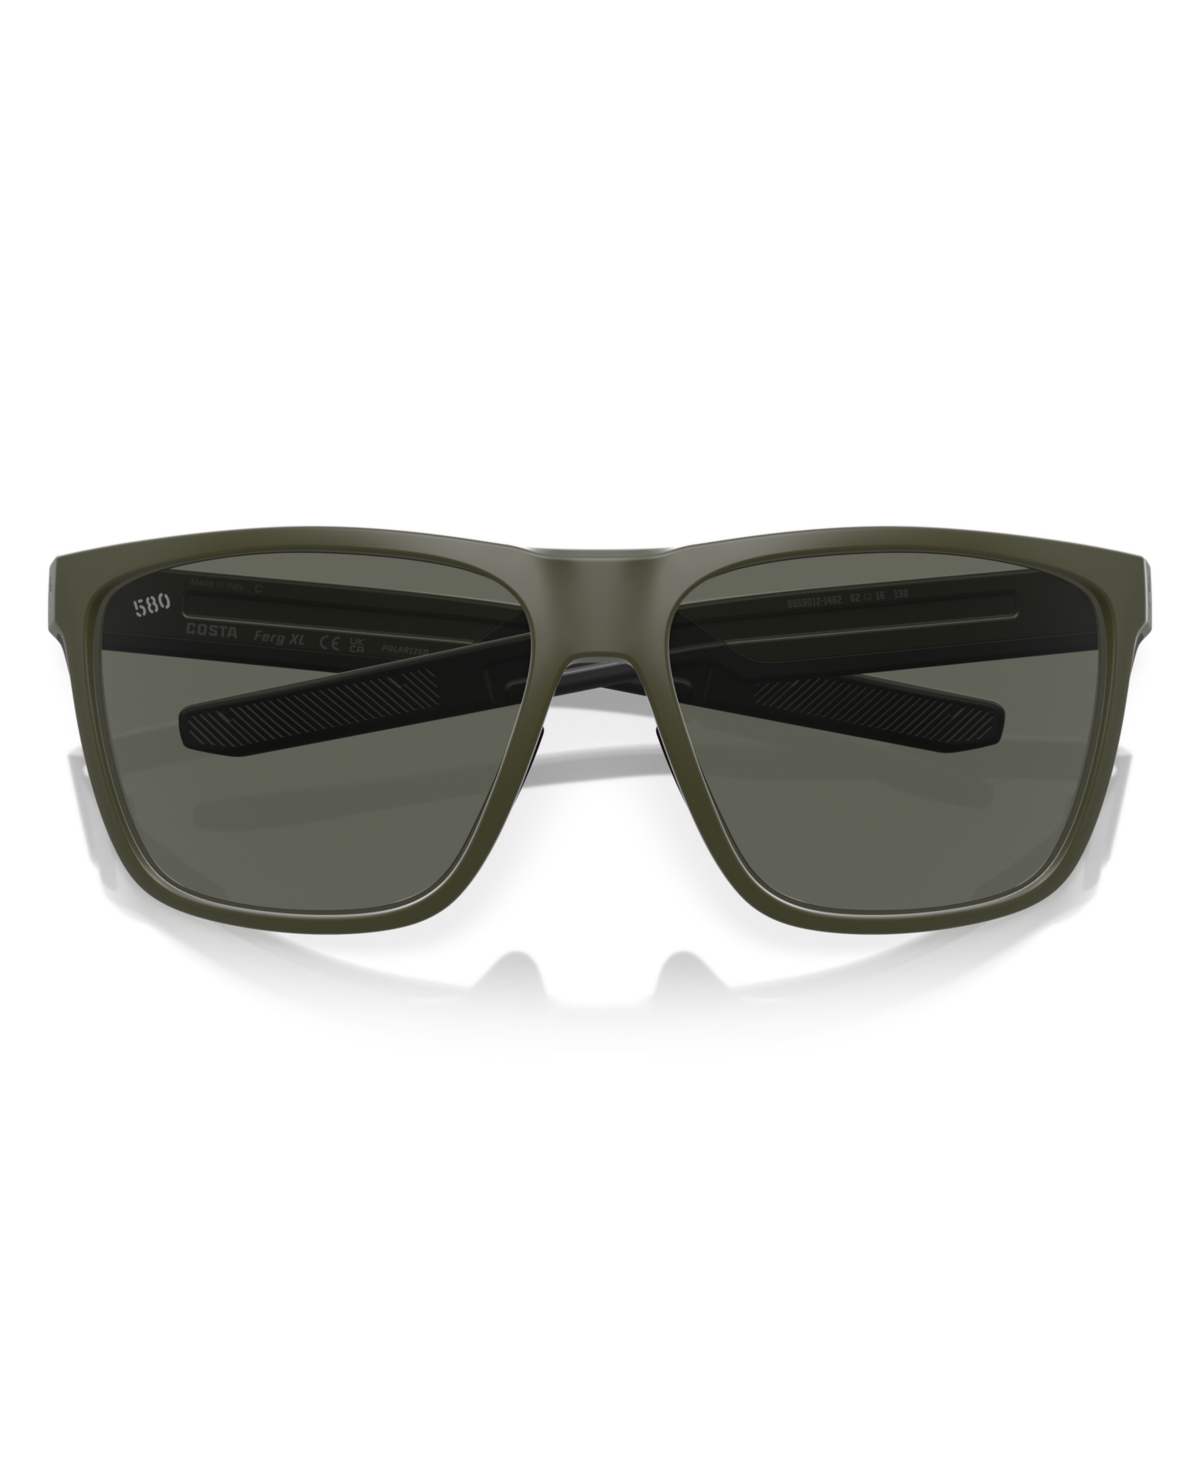 Shop Costa Del Mar Men's Polarized Sunglasses, Ferg Xl 6s9012 In Matte Olive